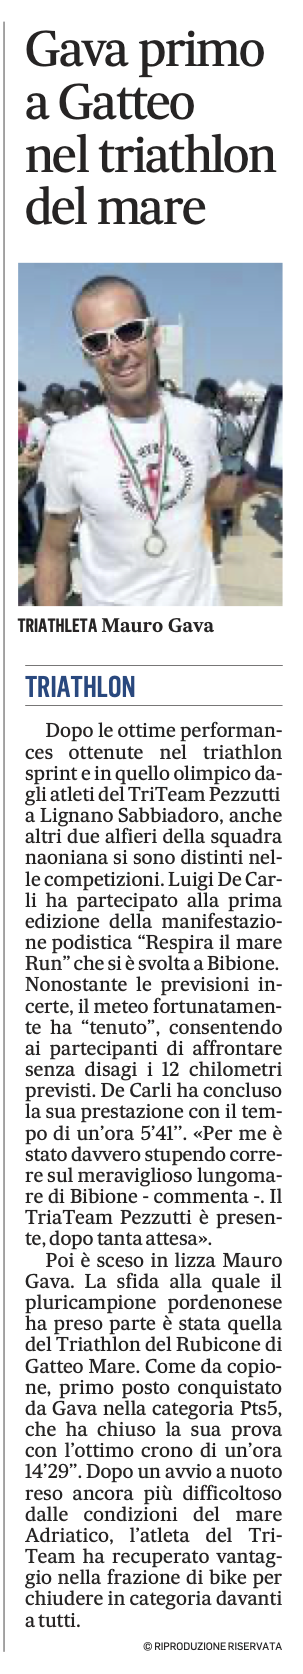 Gazzettino_06-05-2022: Gava primo a Gatteo nel triathlon del mare